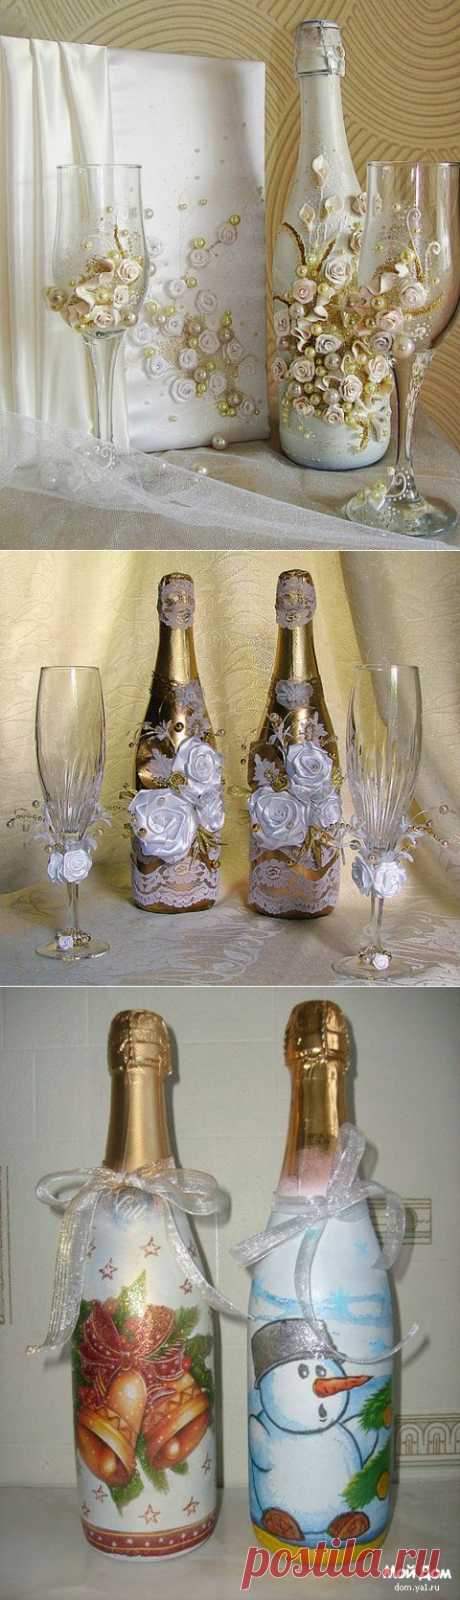 Как украсить бутылку шампанского на Новый год?